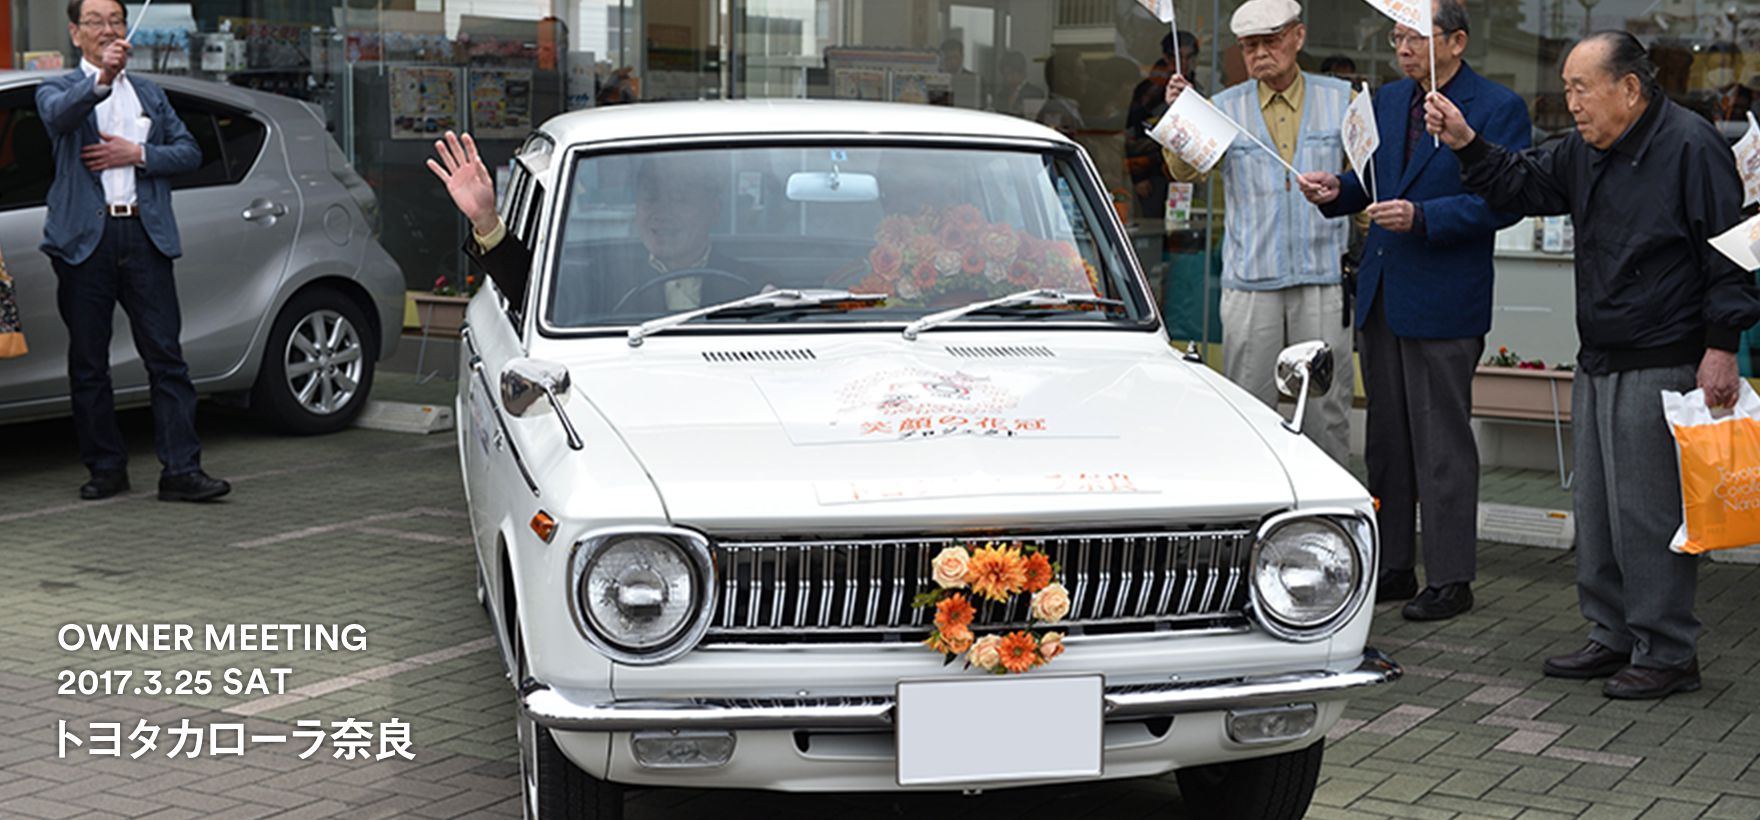 トヨタ インフォメーション キャンペーン カローラ 笑顔の花冠プロジェクト トヨタカローラ奈良 トヨタ自動車webサイト